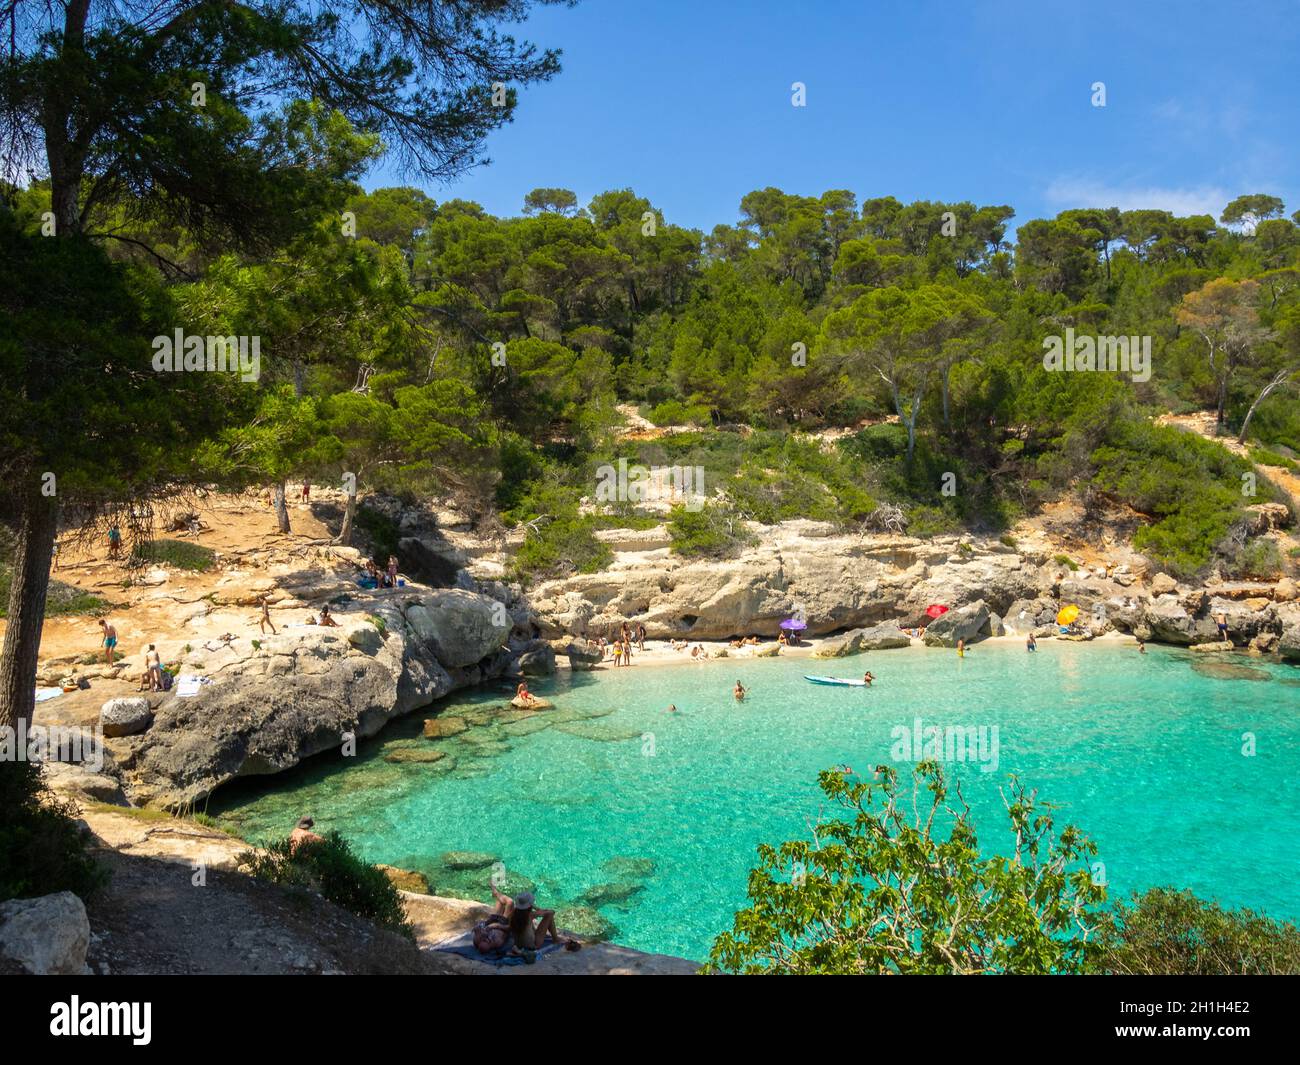 Cala Mitjana between the pine trees, Menorca Stock Photo